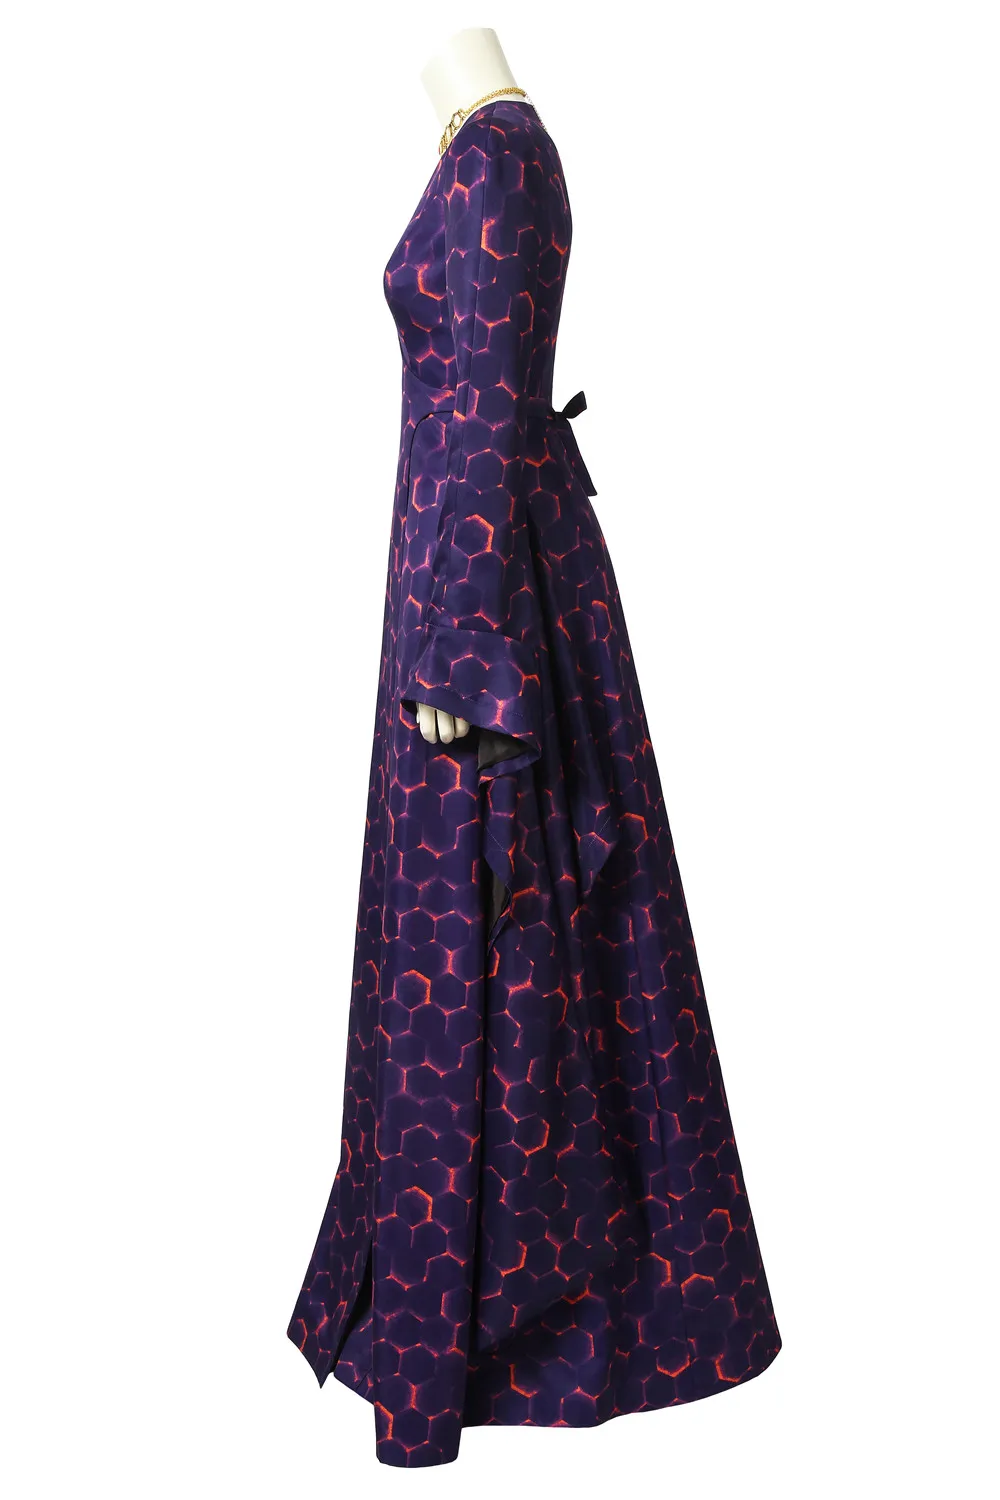 Игра престолов Сезон 8 Melisandre Косплей Костюм Хэллоуин для женщин Роскошные нарядное платье наряд на заказ COSPLAYONSEN